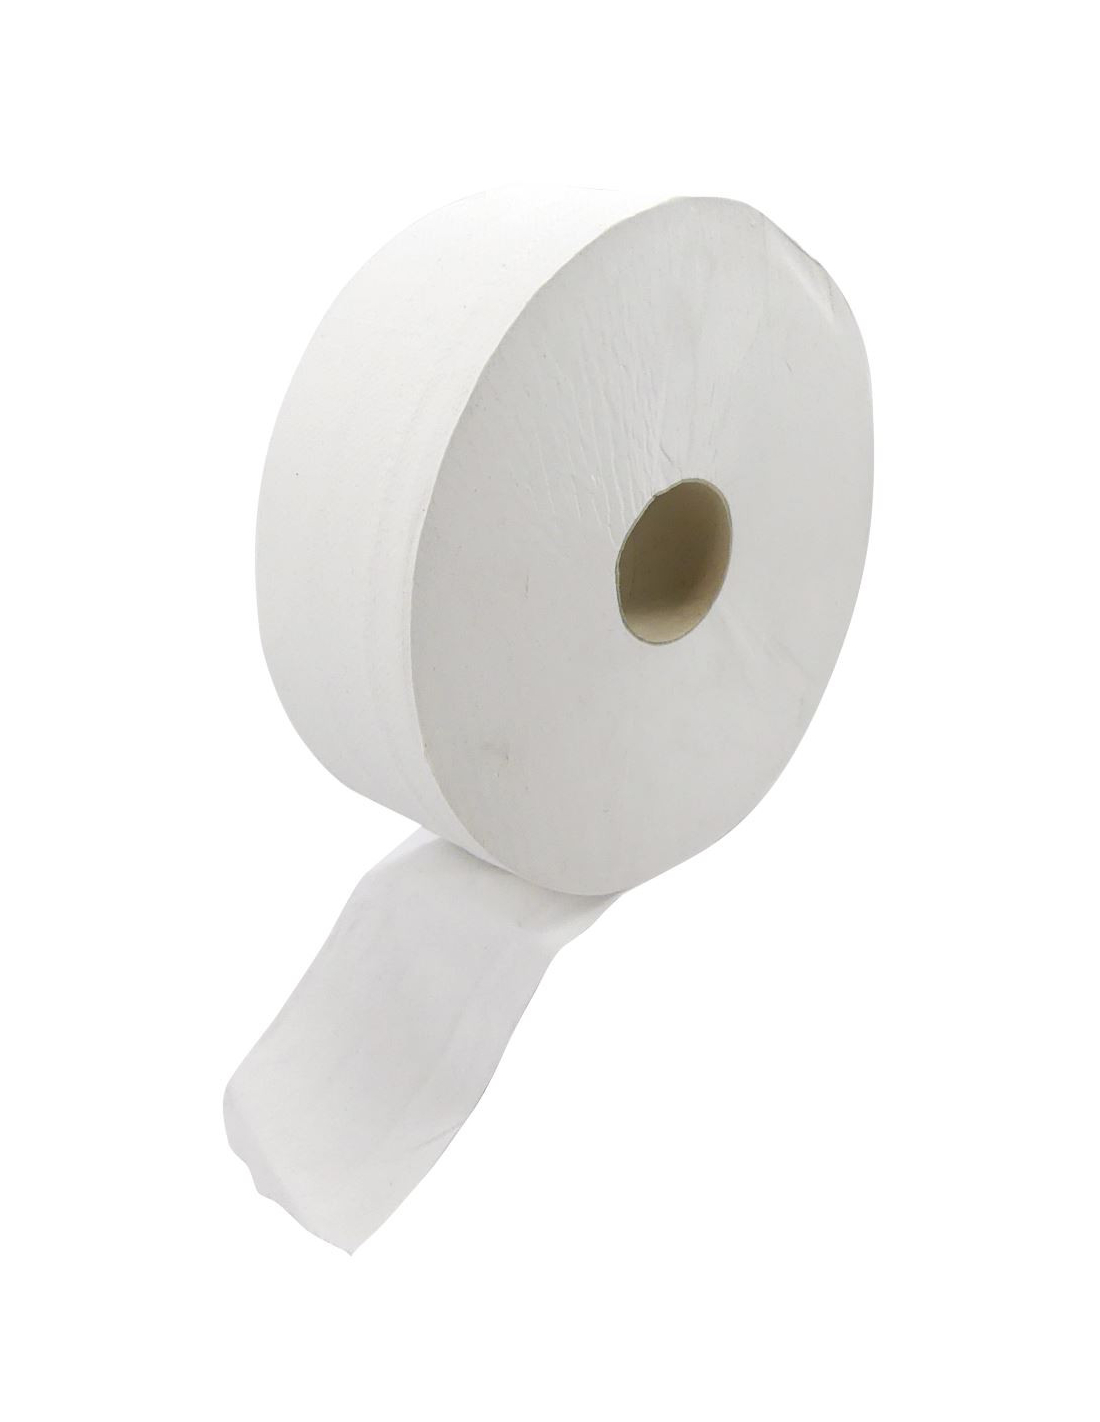 Rouleaux de papier toilette jumbo, pratique et économique. Disponible sur